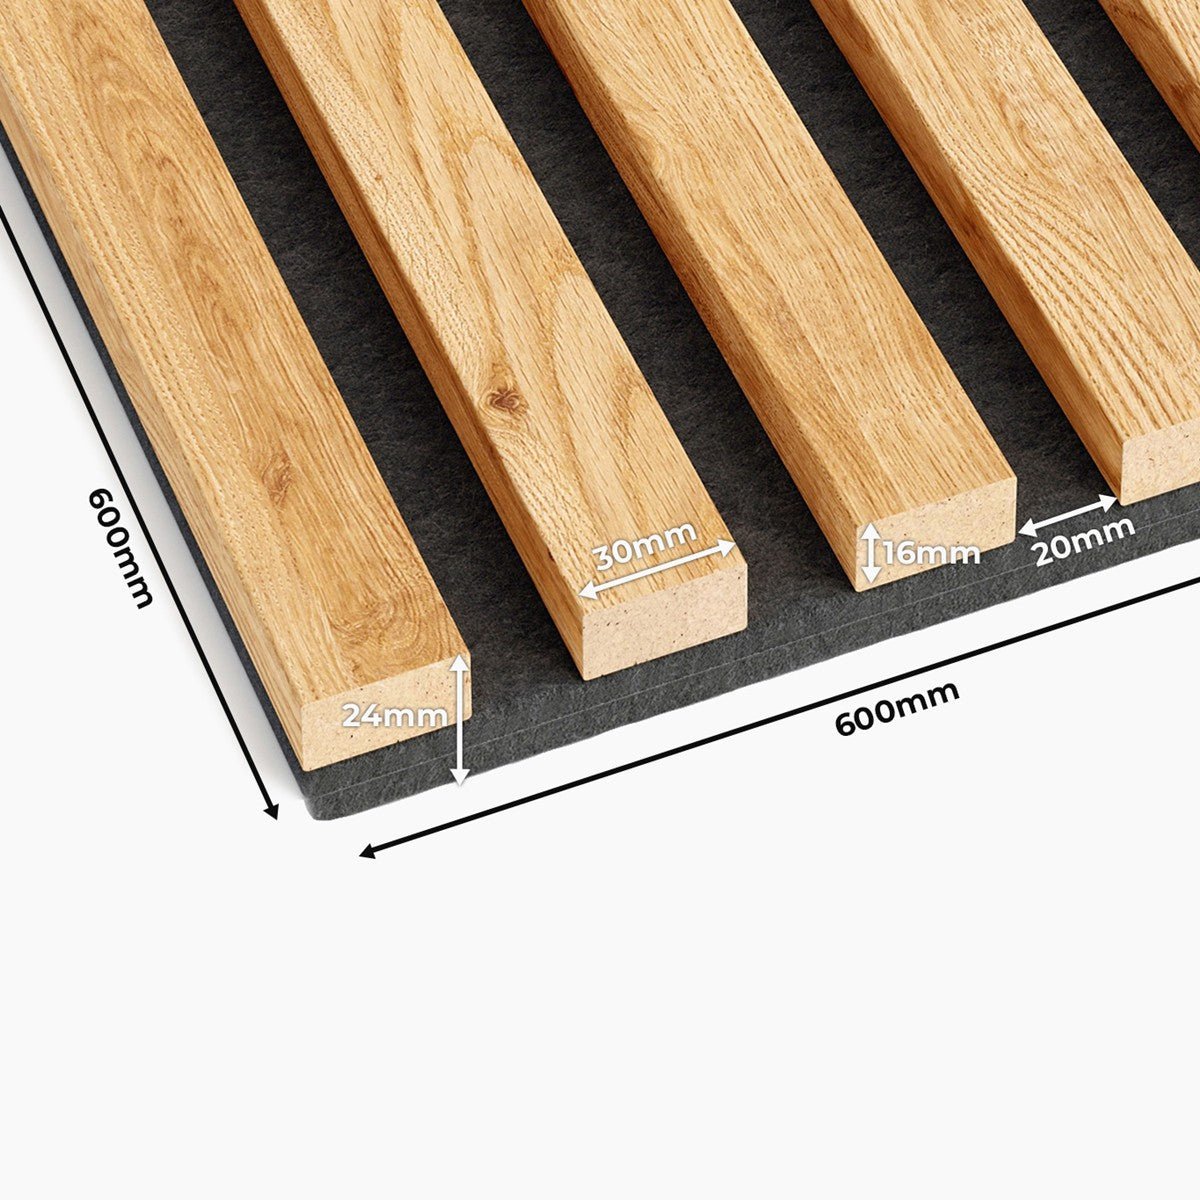 White Oak Square Slat Acoustic Panels